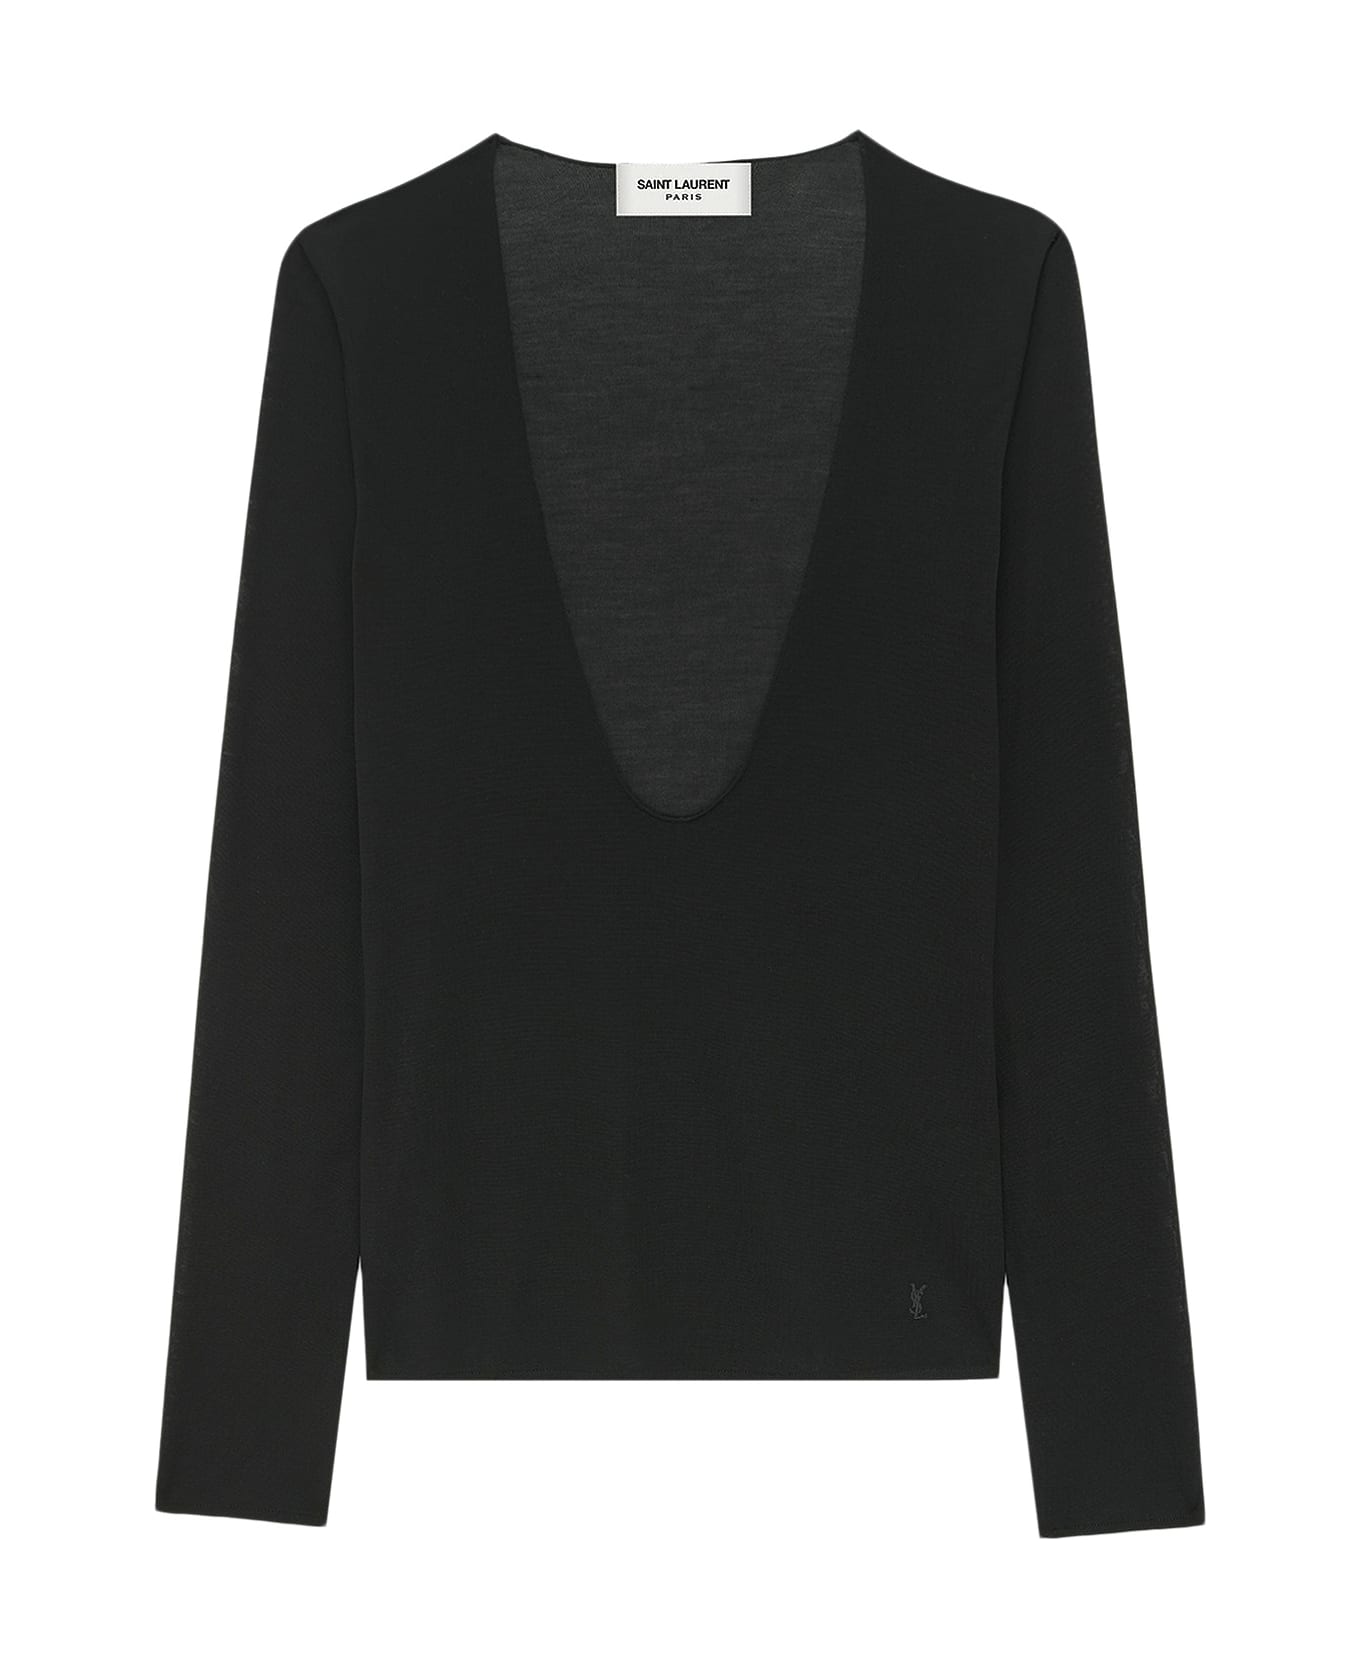 Saint Laurent Sweater - Black ニットウェア